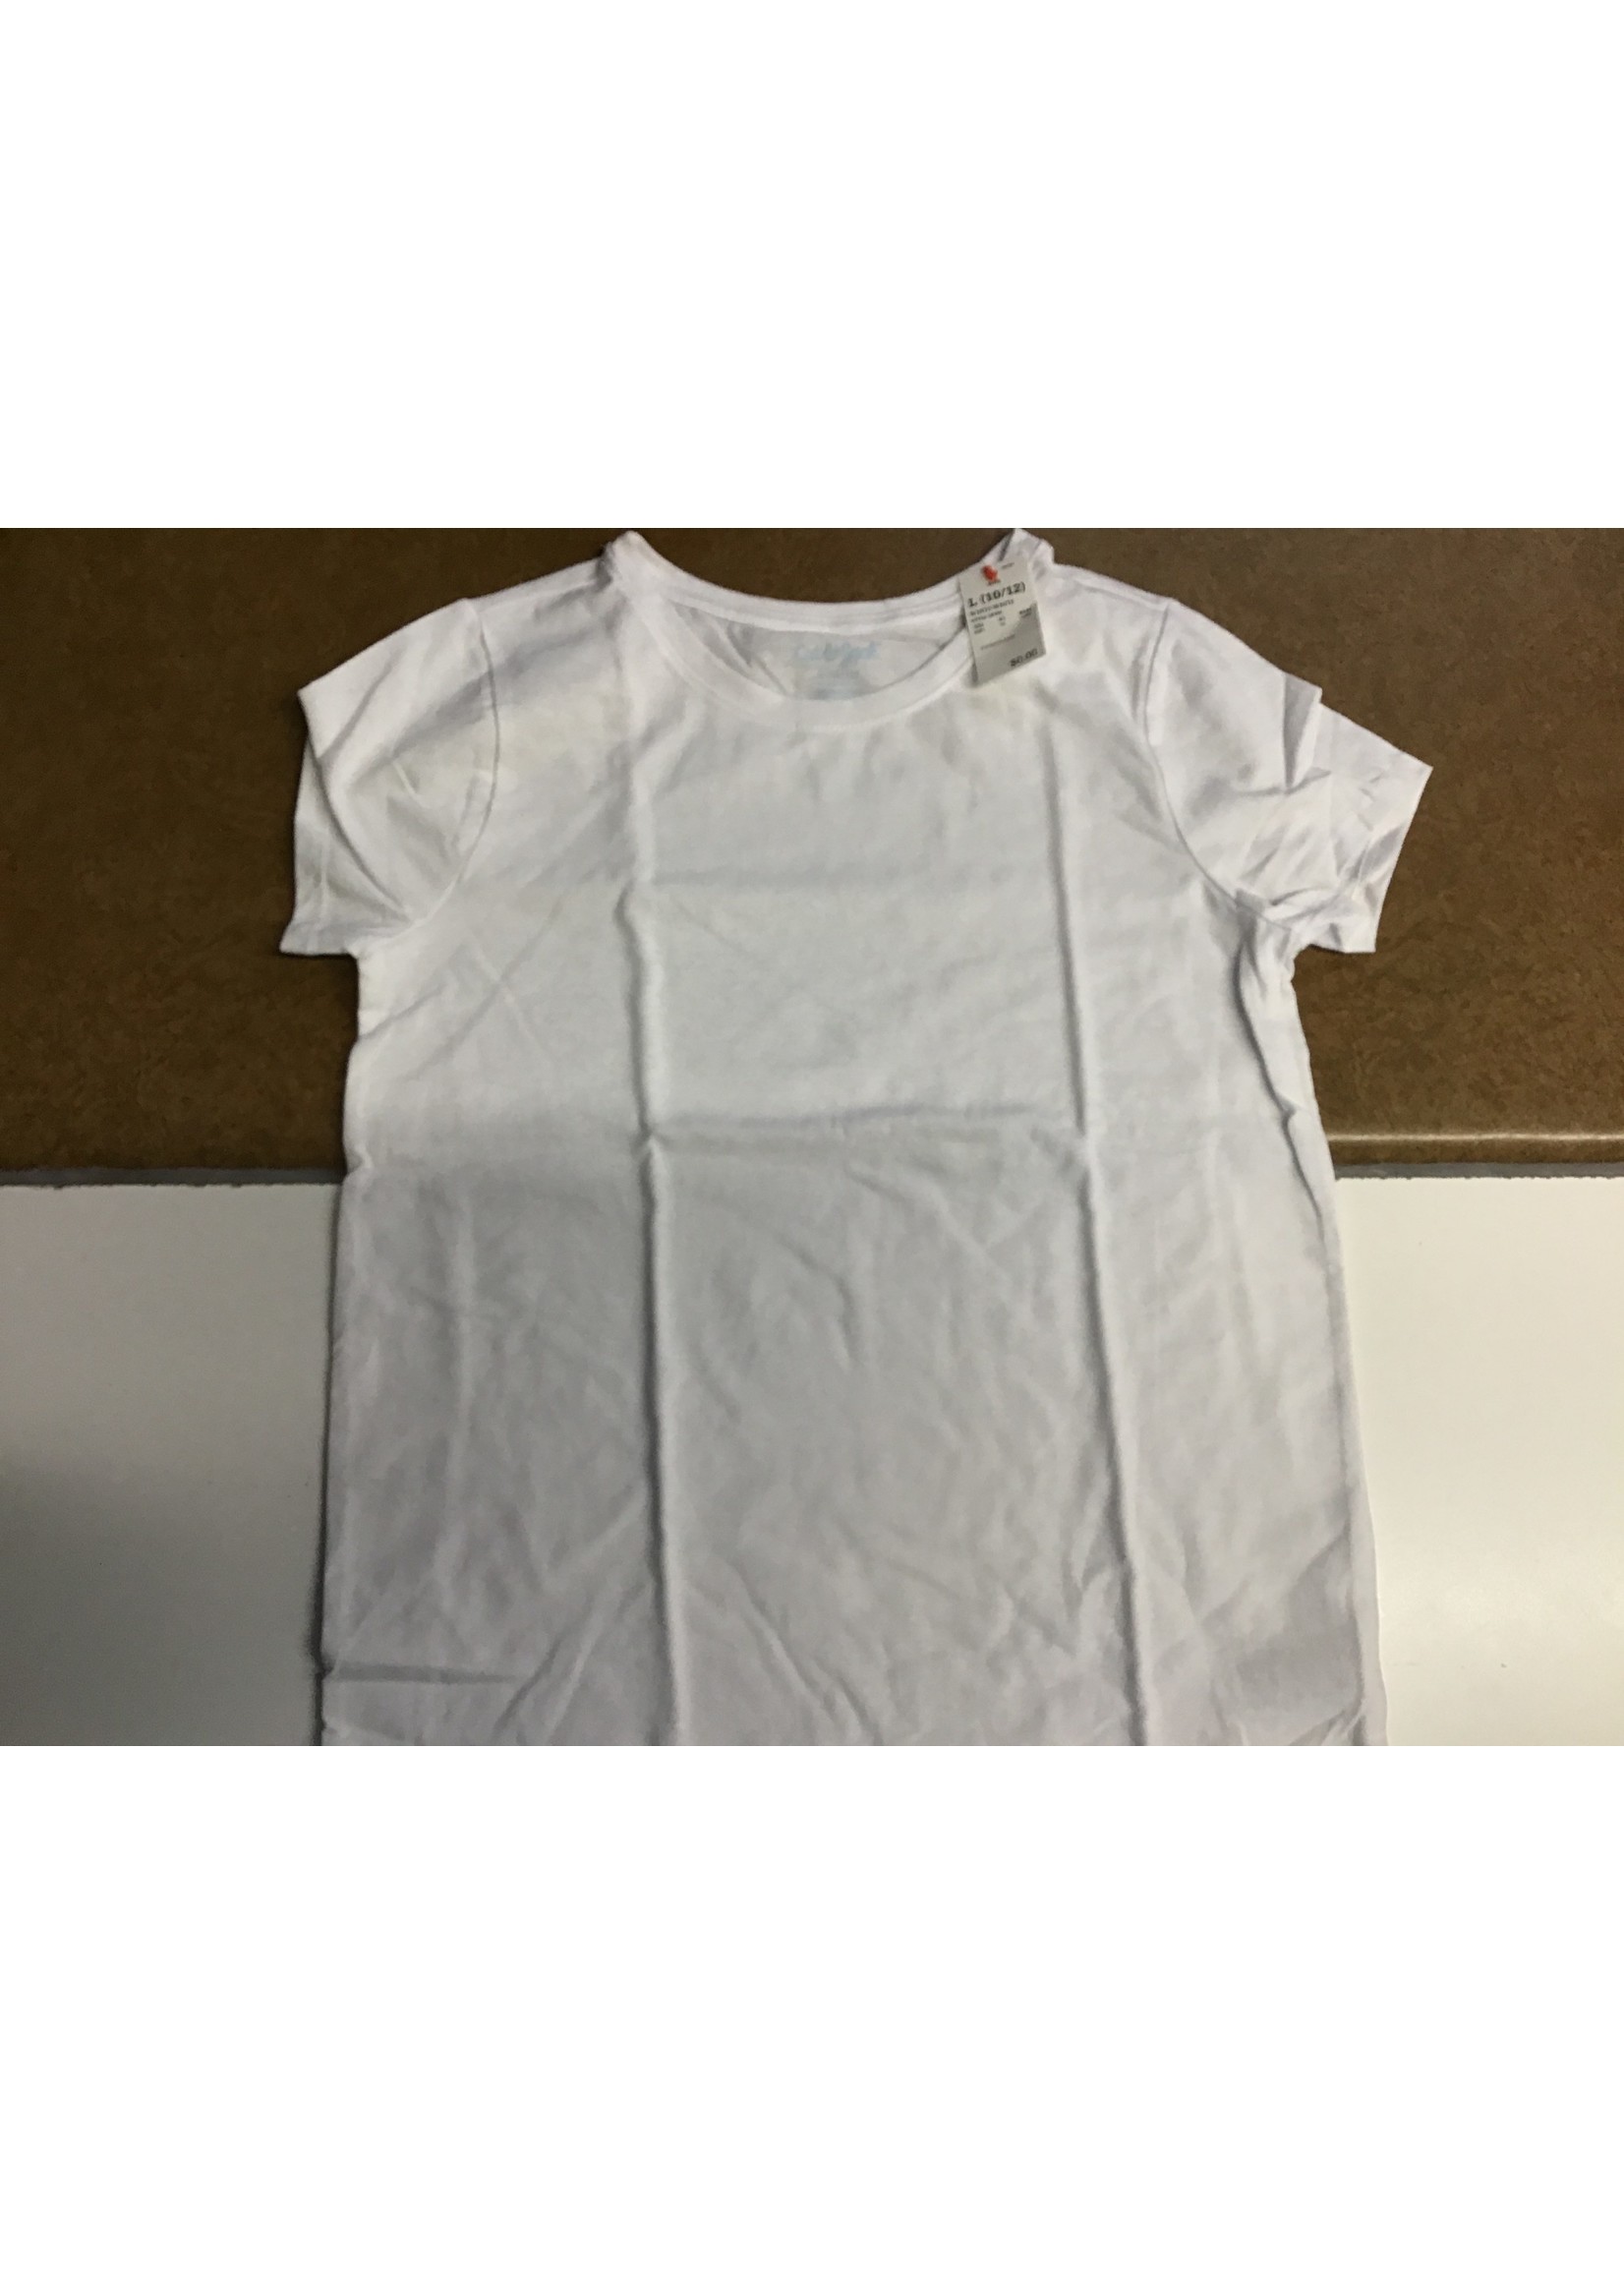 Cat & Jack White T Shirt Size L